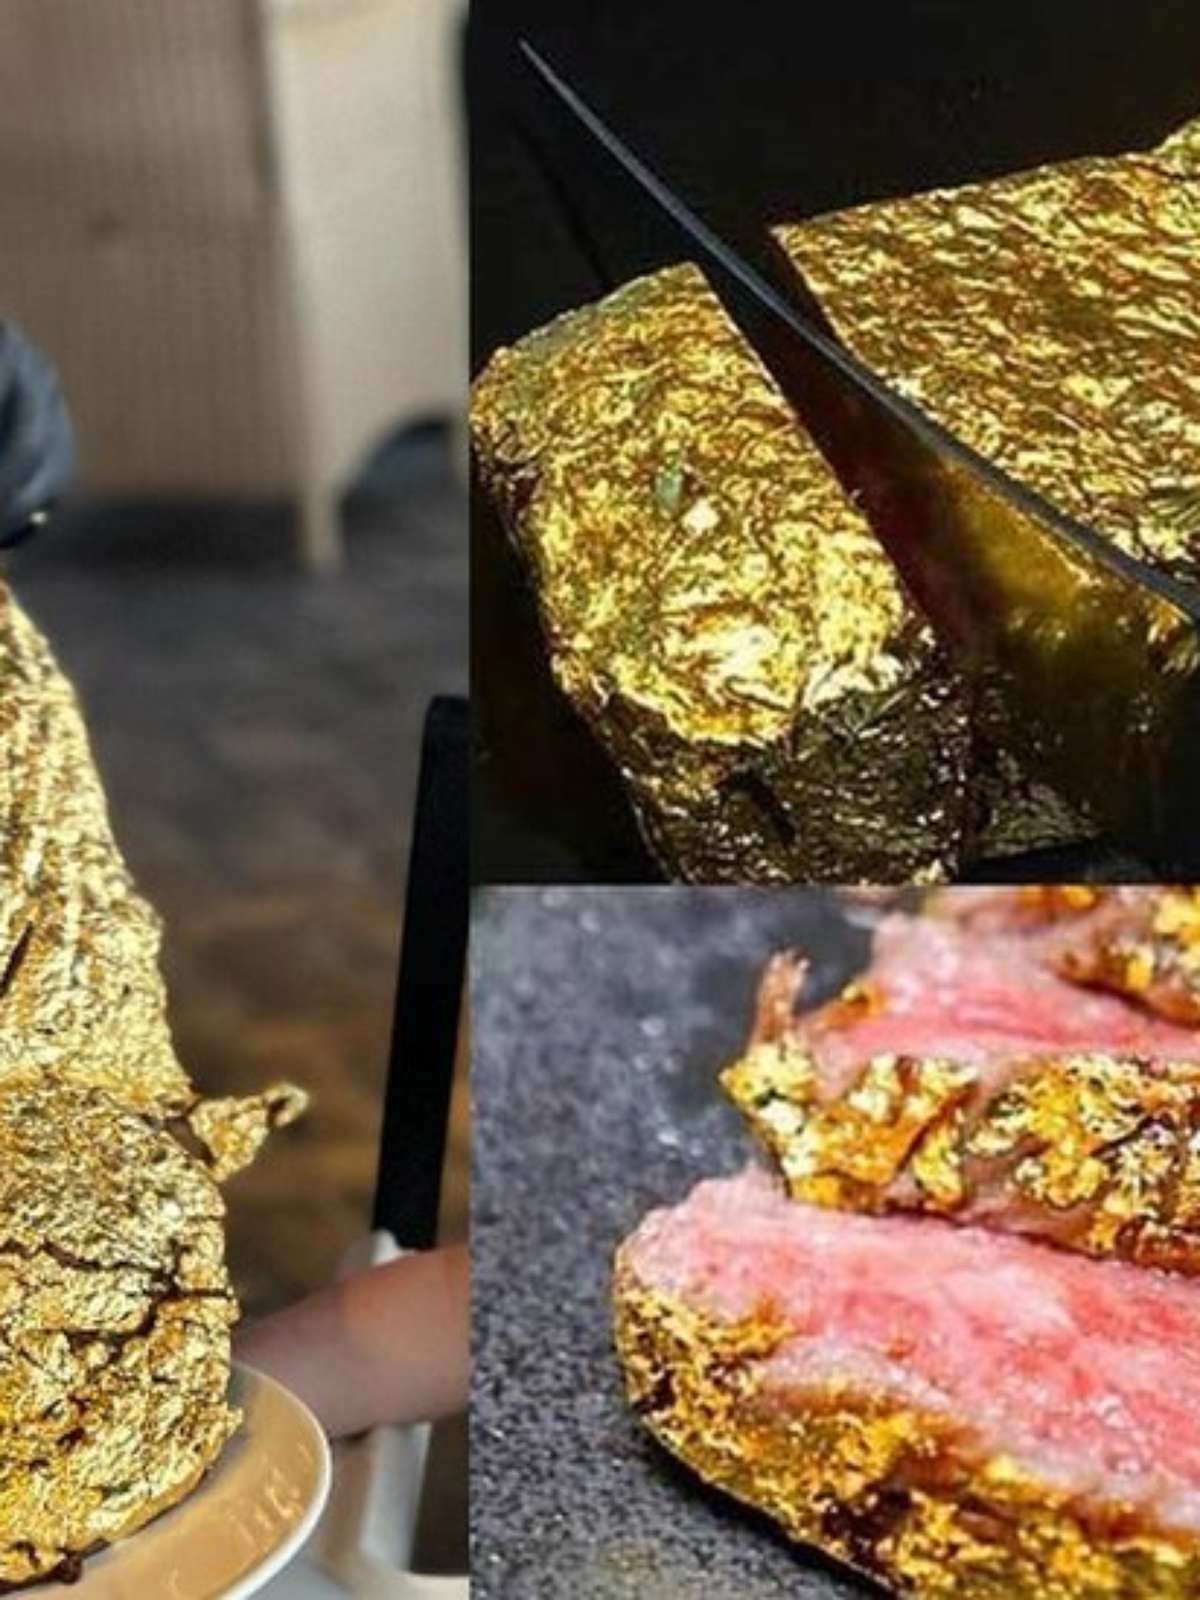 Copa do Mundo: É possível preparar 'carne de ouro' comida por